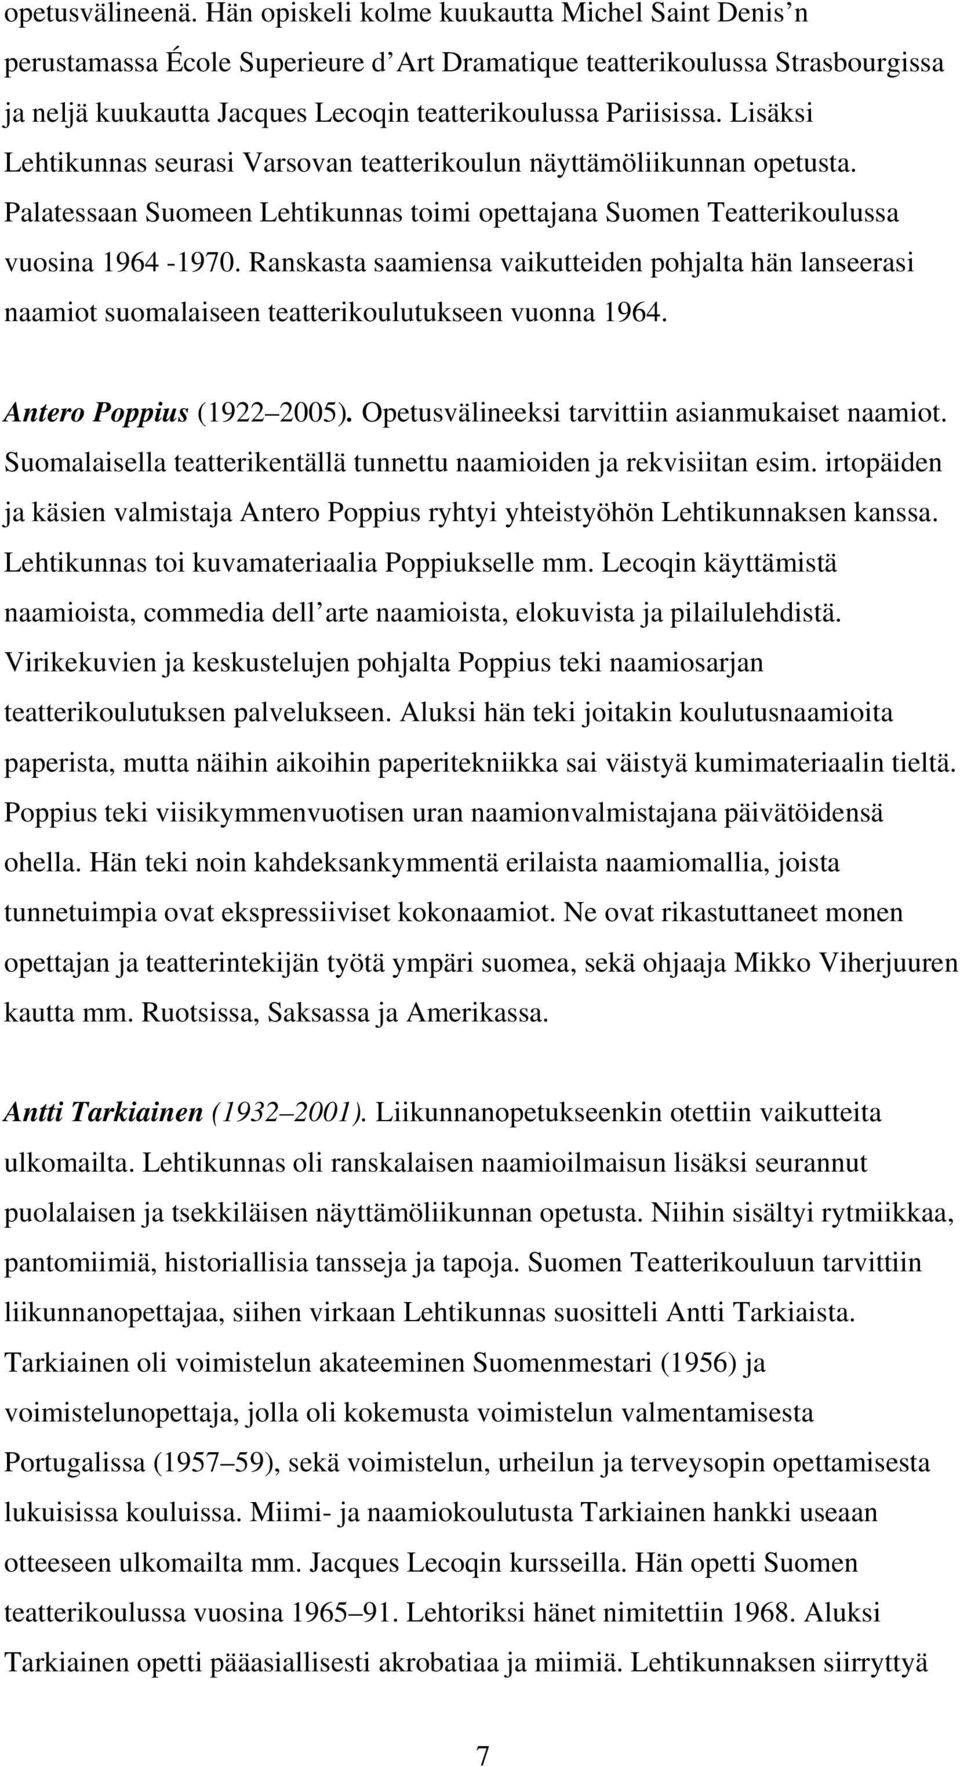 Lisäksi Lehtikunnas seurasi Varsovan teatterikoulun näyttämöliikunnan opetusta. Palatessaan Suomeen Lehtikunnas toimi opettajana Suomen Teatterikoulussa vuosina 1964-1970.